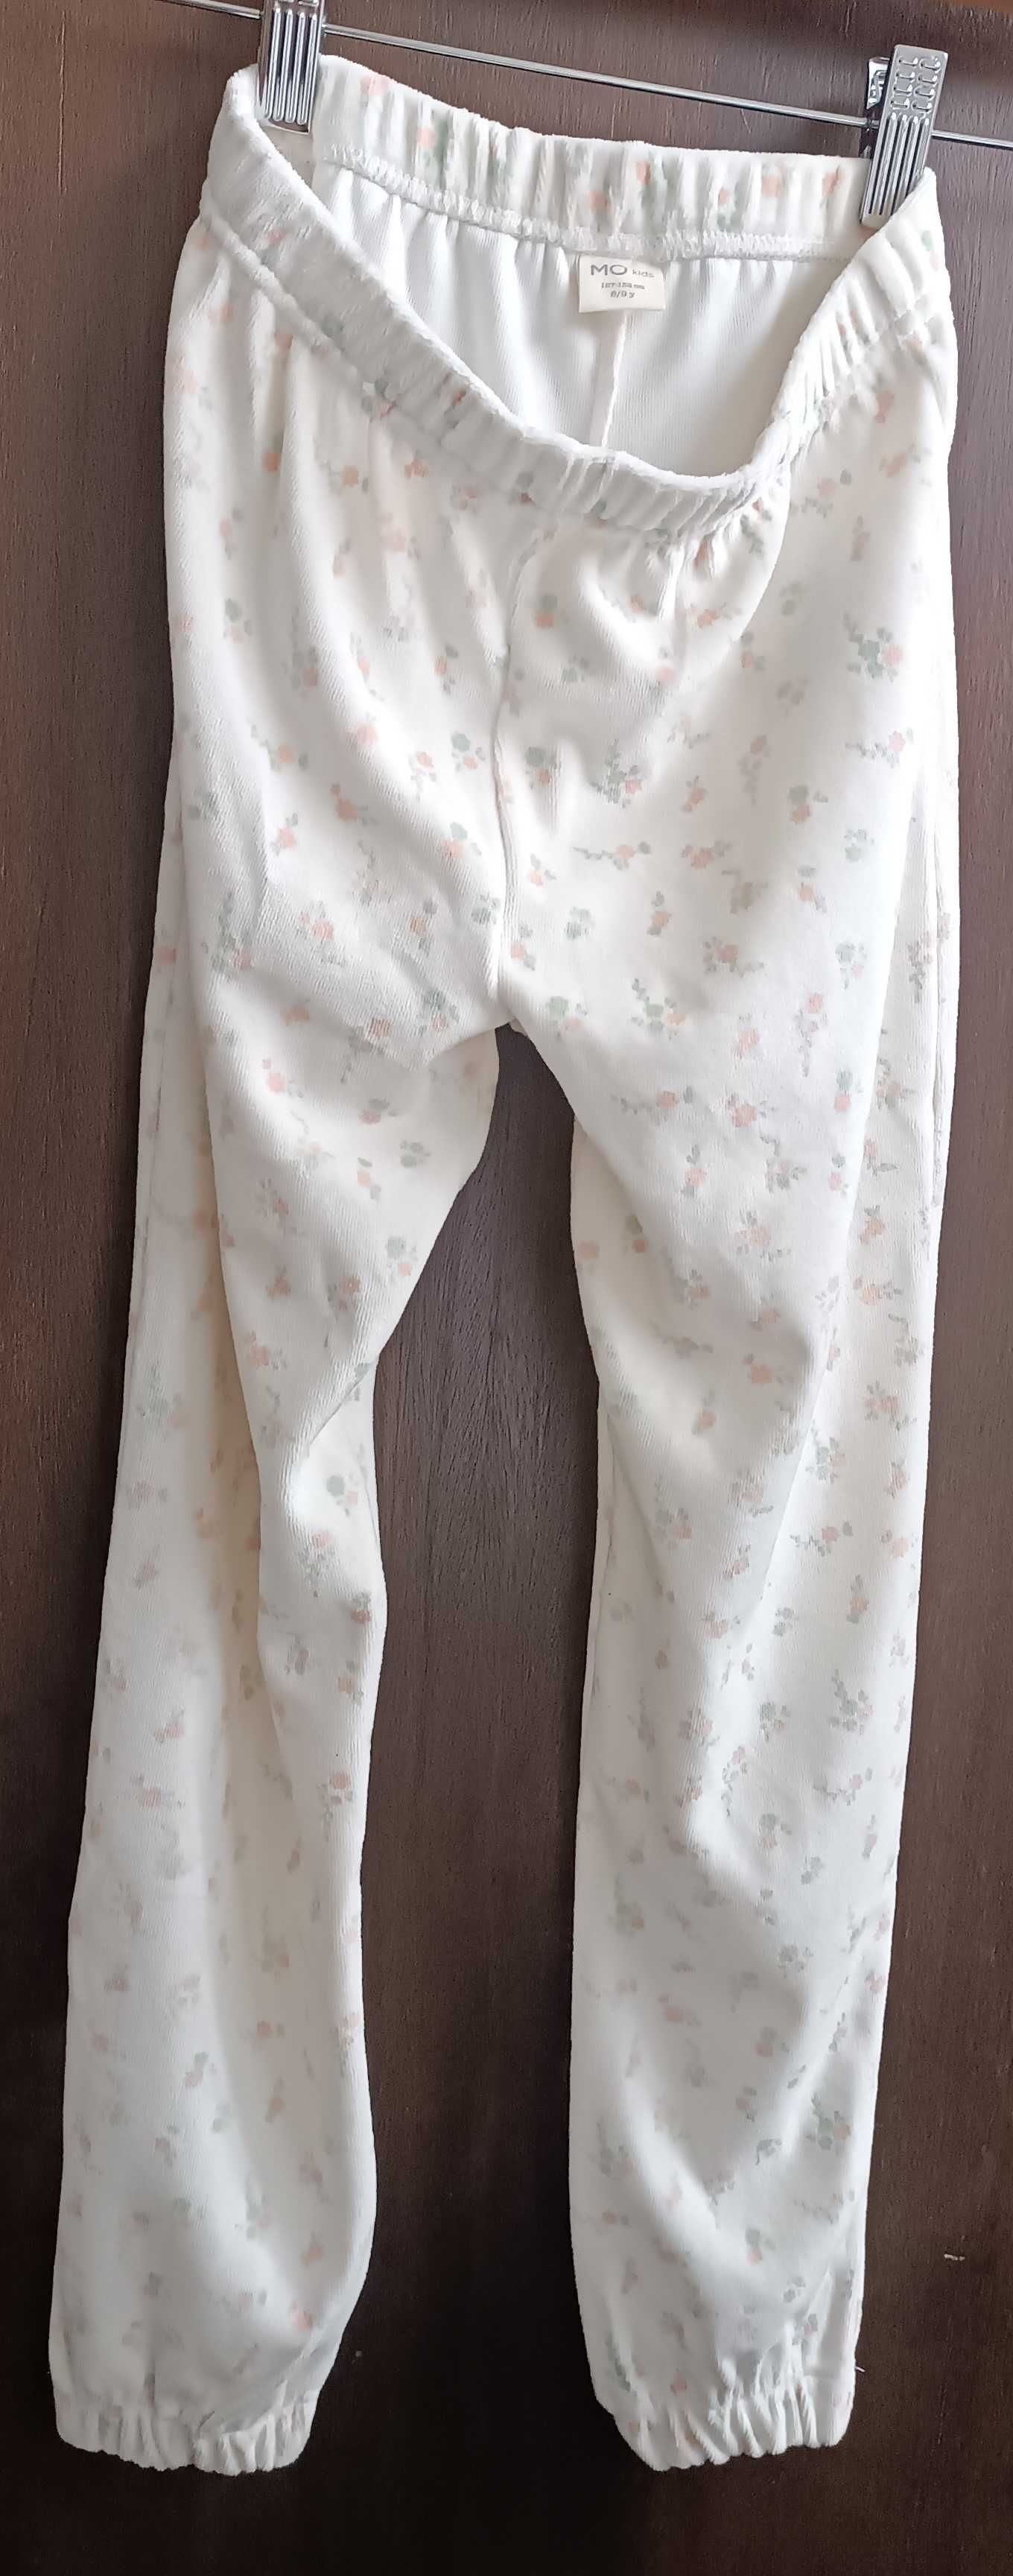 Pijama de criança novo, com etiqueta - tamanho 127-132 cm